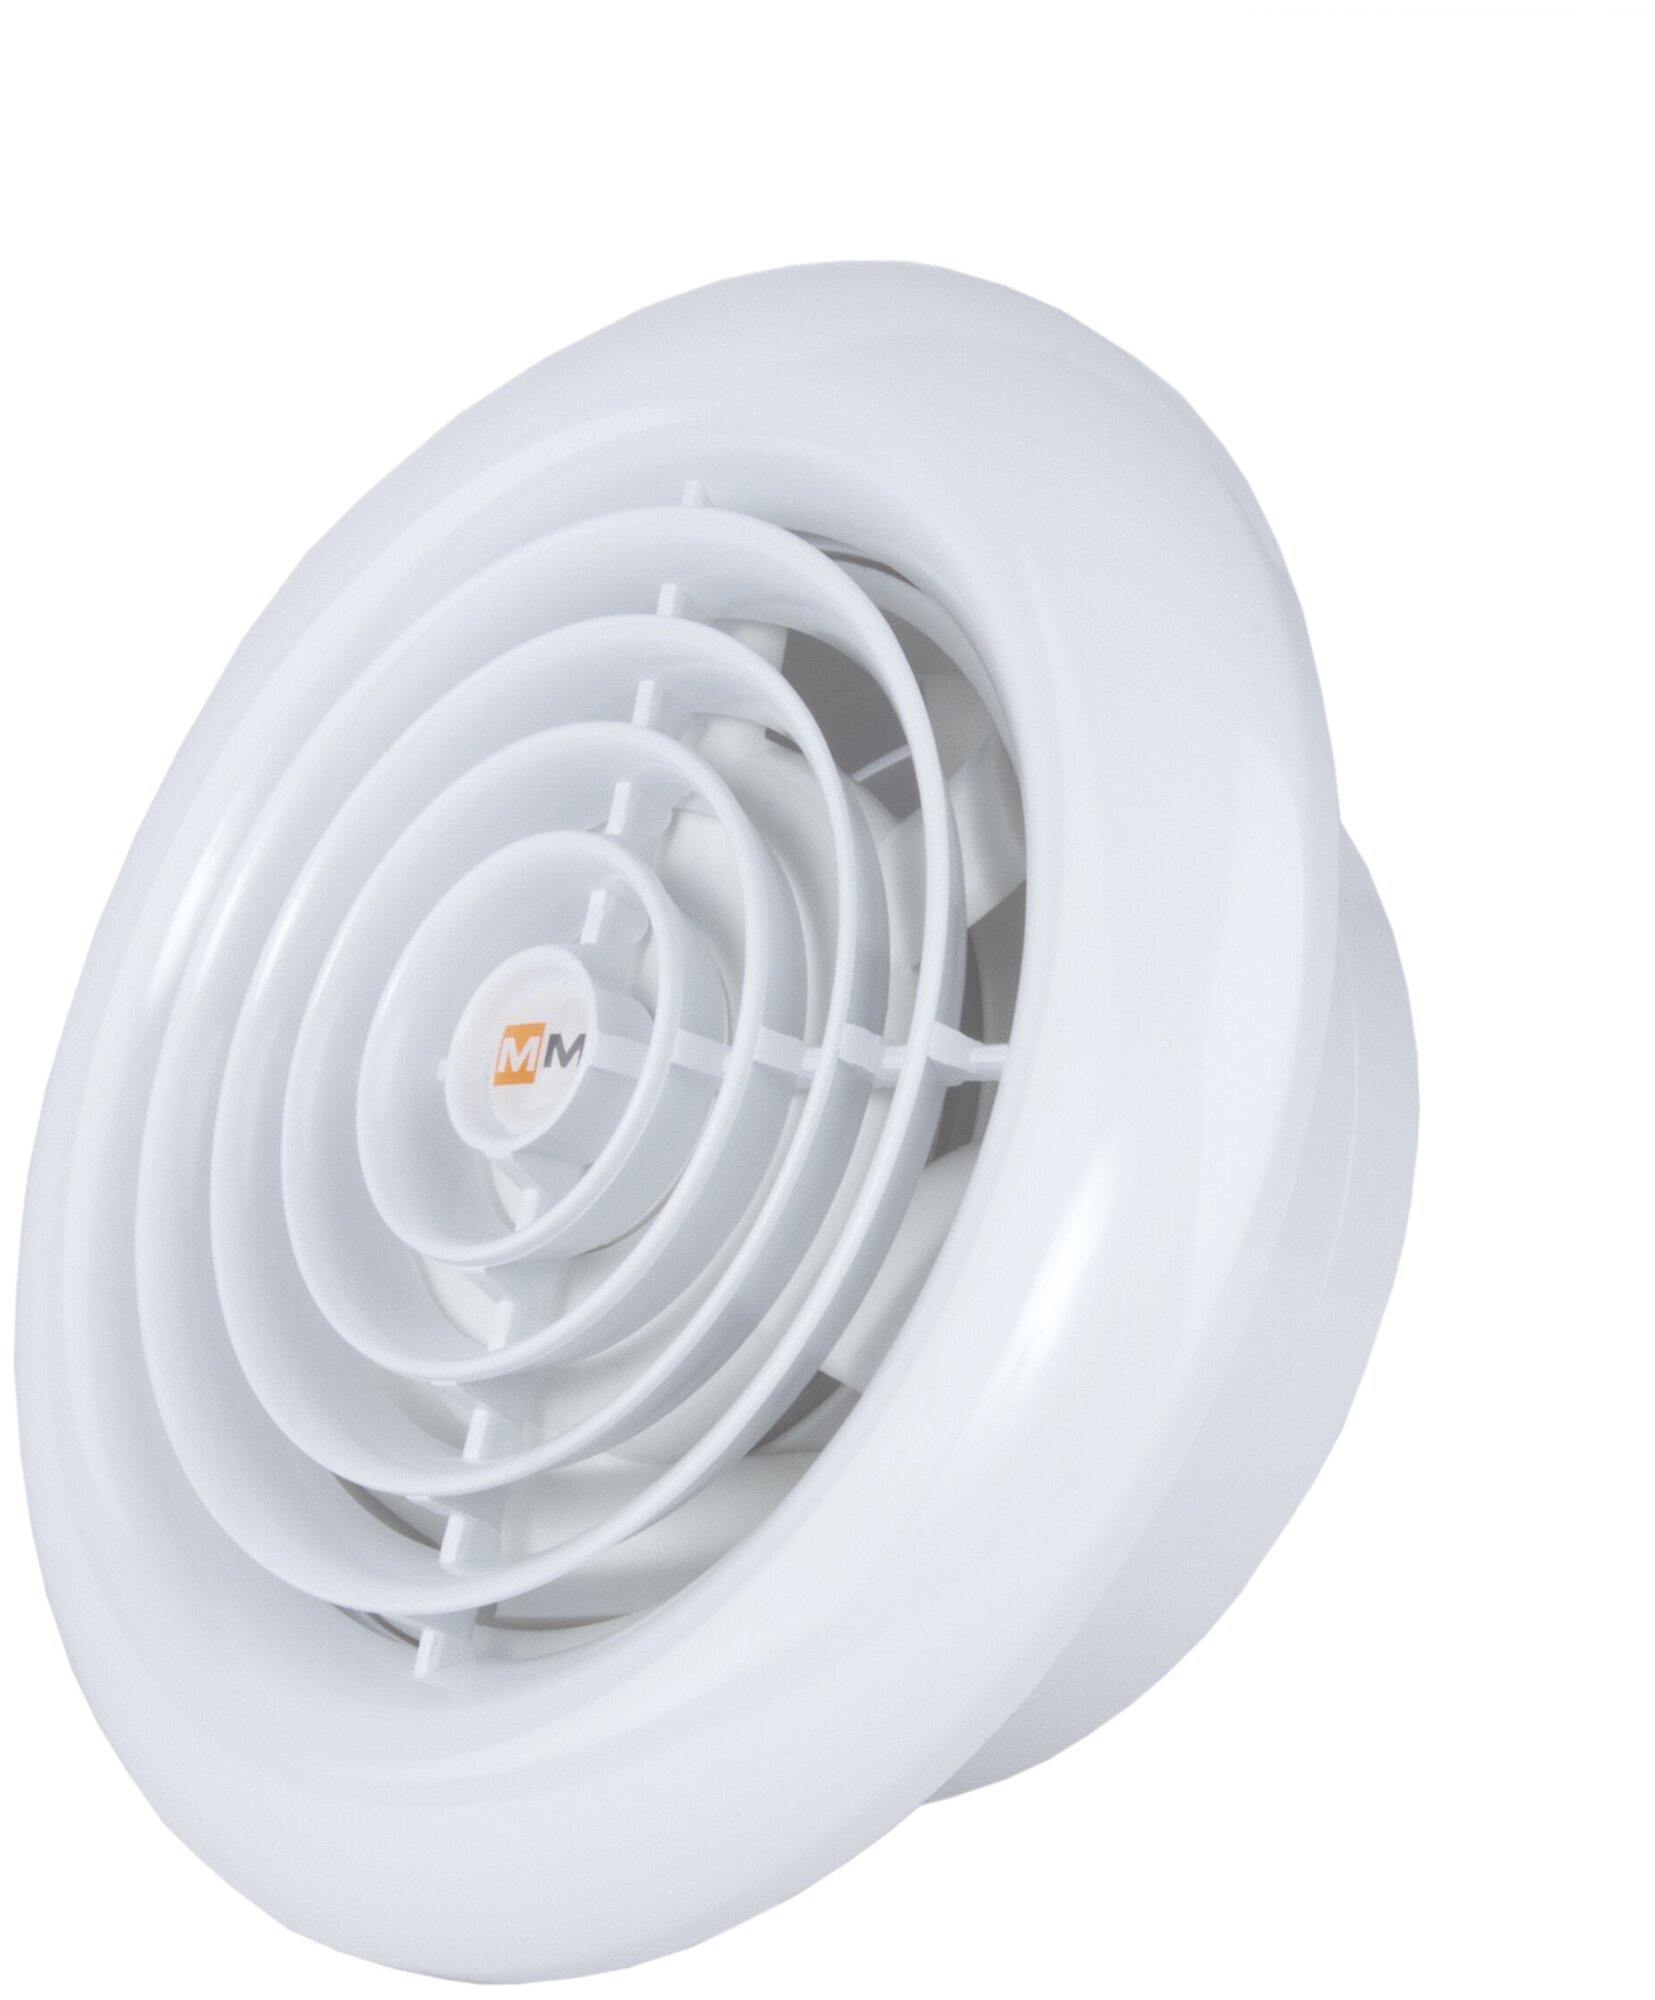 Вытяжной тонкий вентилятор для ванной Mmotors ММ 100 круглый с обратным клапаном белый